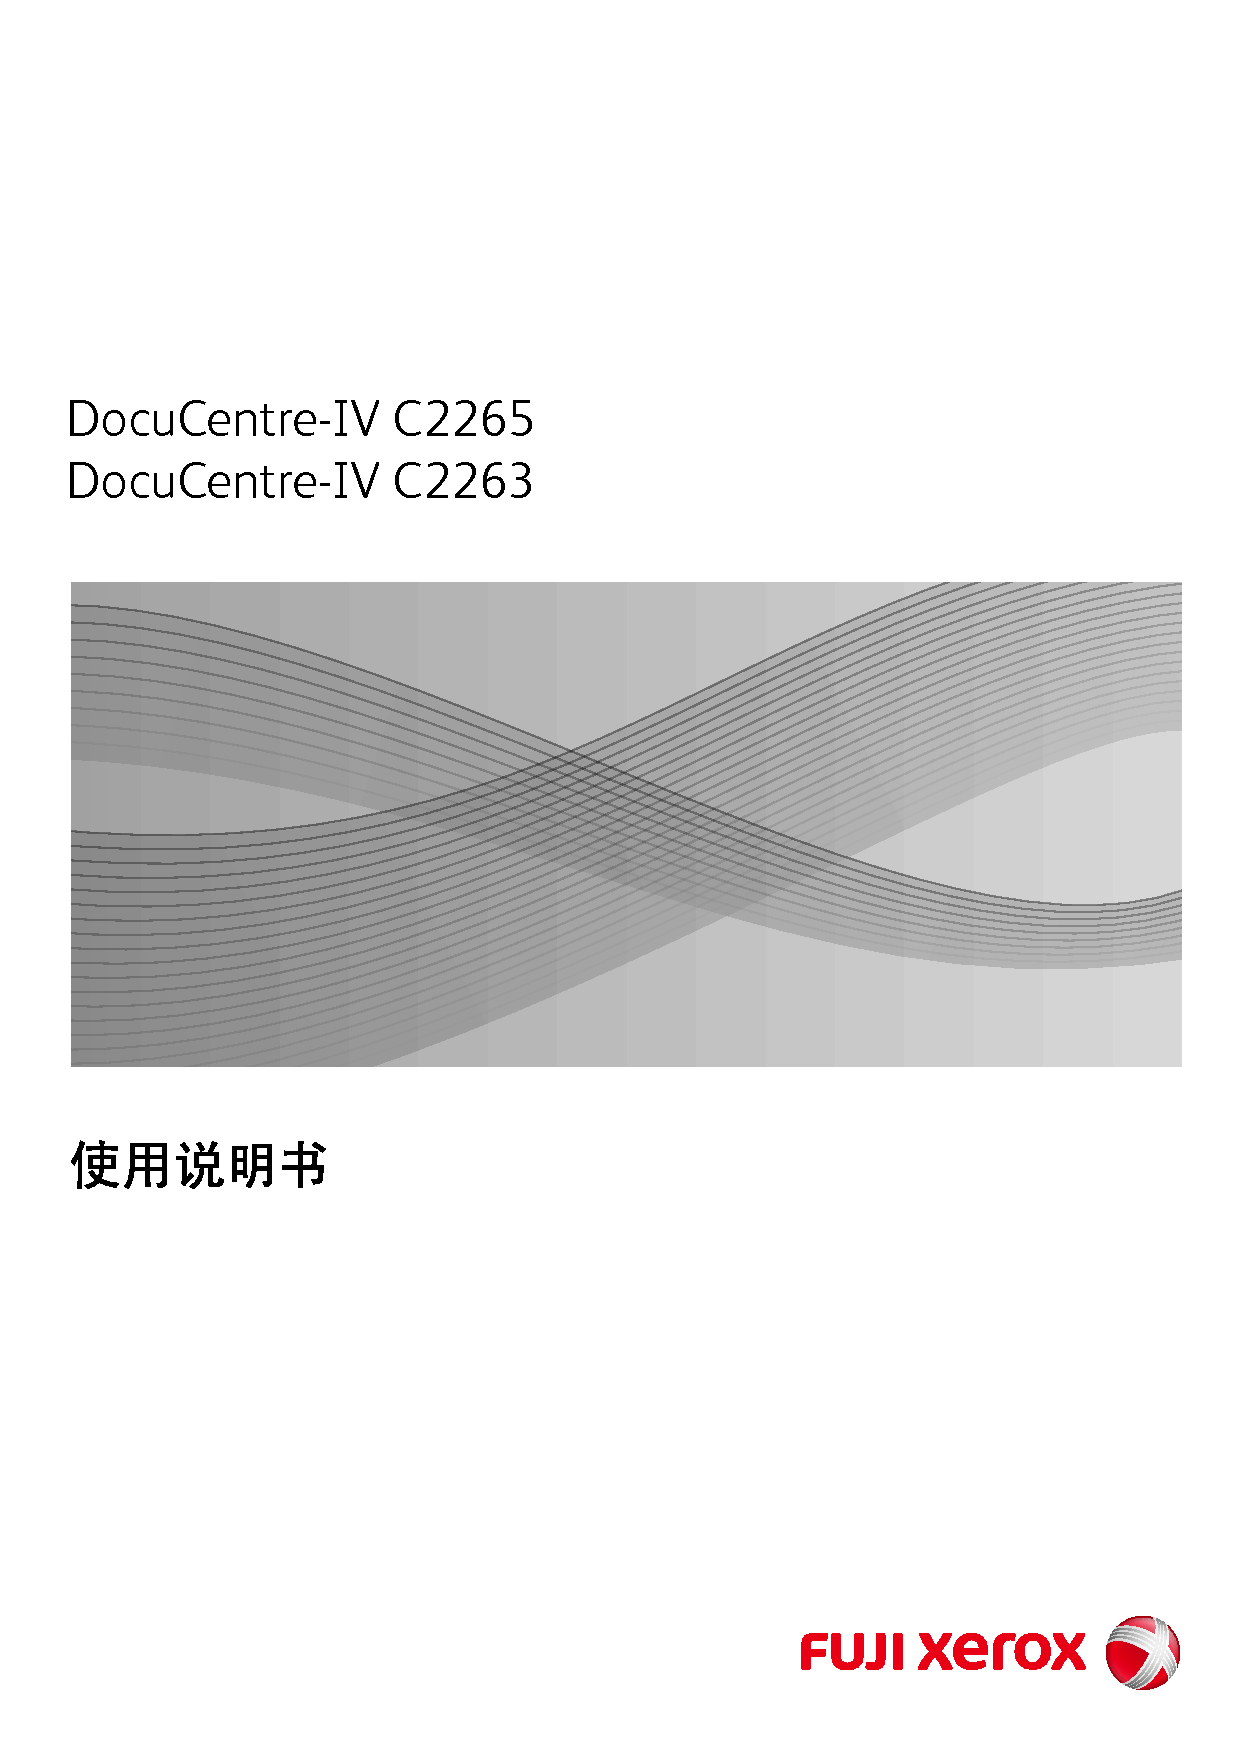 富士施乐 Fuji Xerox DocuCentre-IV C2263 使用说明书 封面